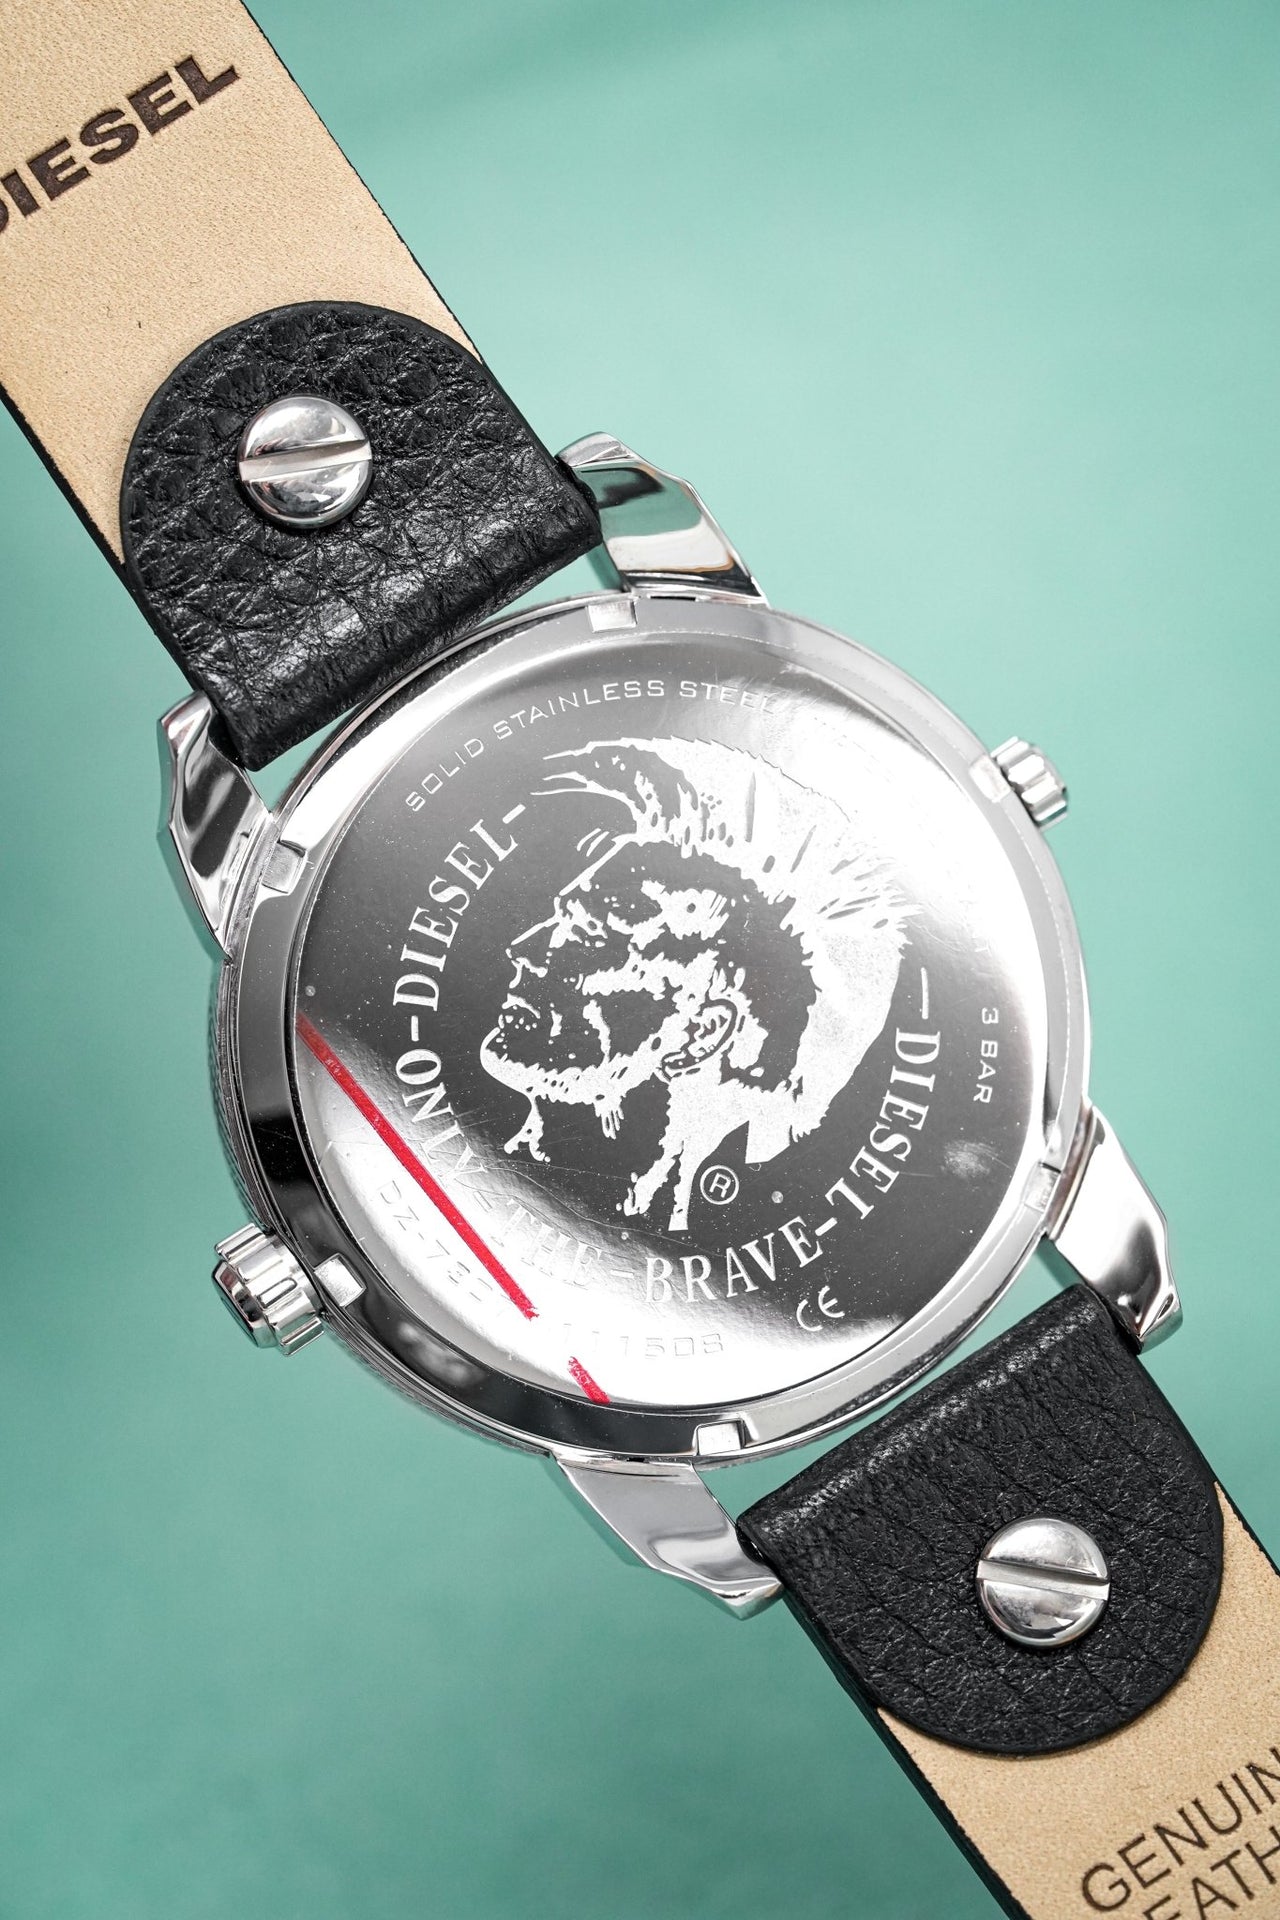 Diesel Men's Watch Mini Daddy Silver Black - Watches & Crystals